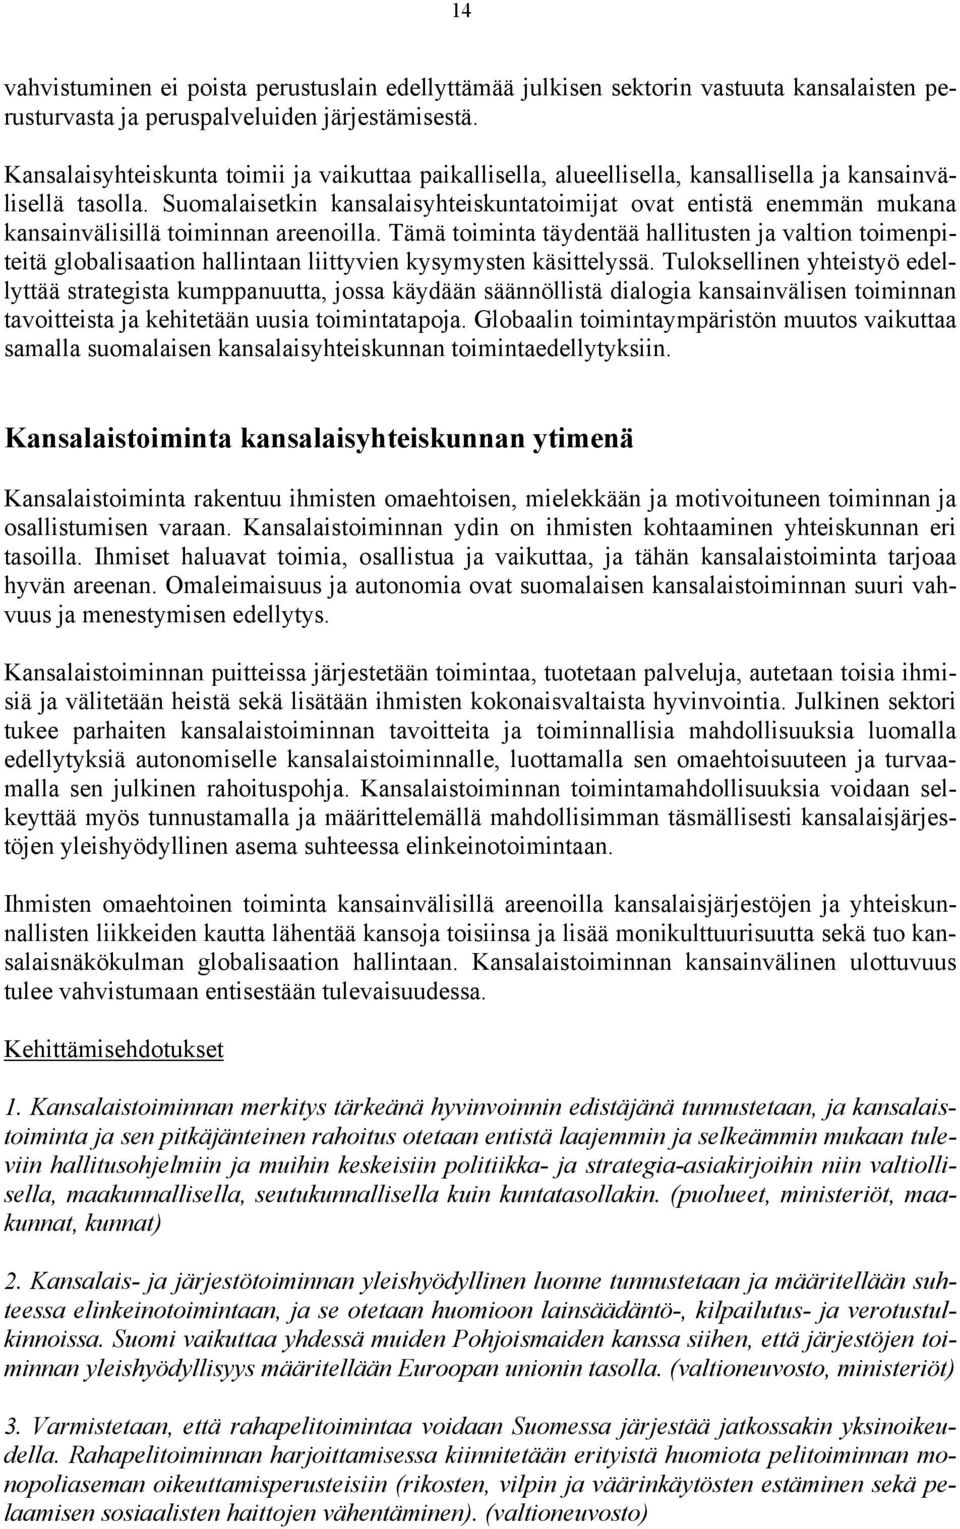 Suomalaisetkin kansalaisyhteiskuntatoimijat ovat entistä enemmän mukana kansainvälisillä toiminnan areenoilla.